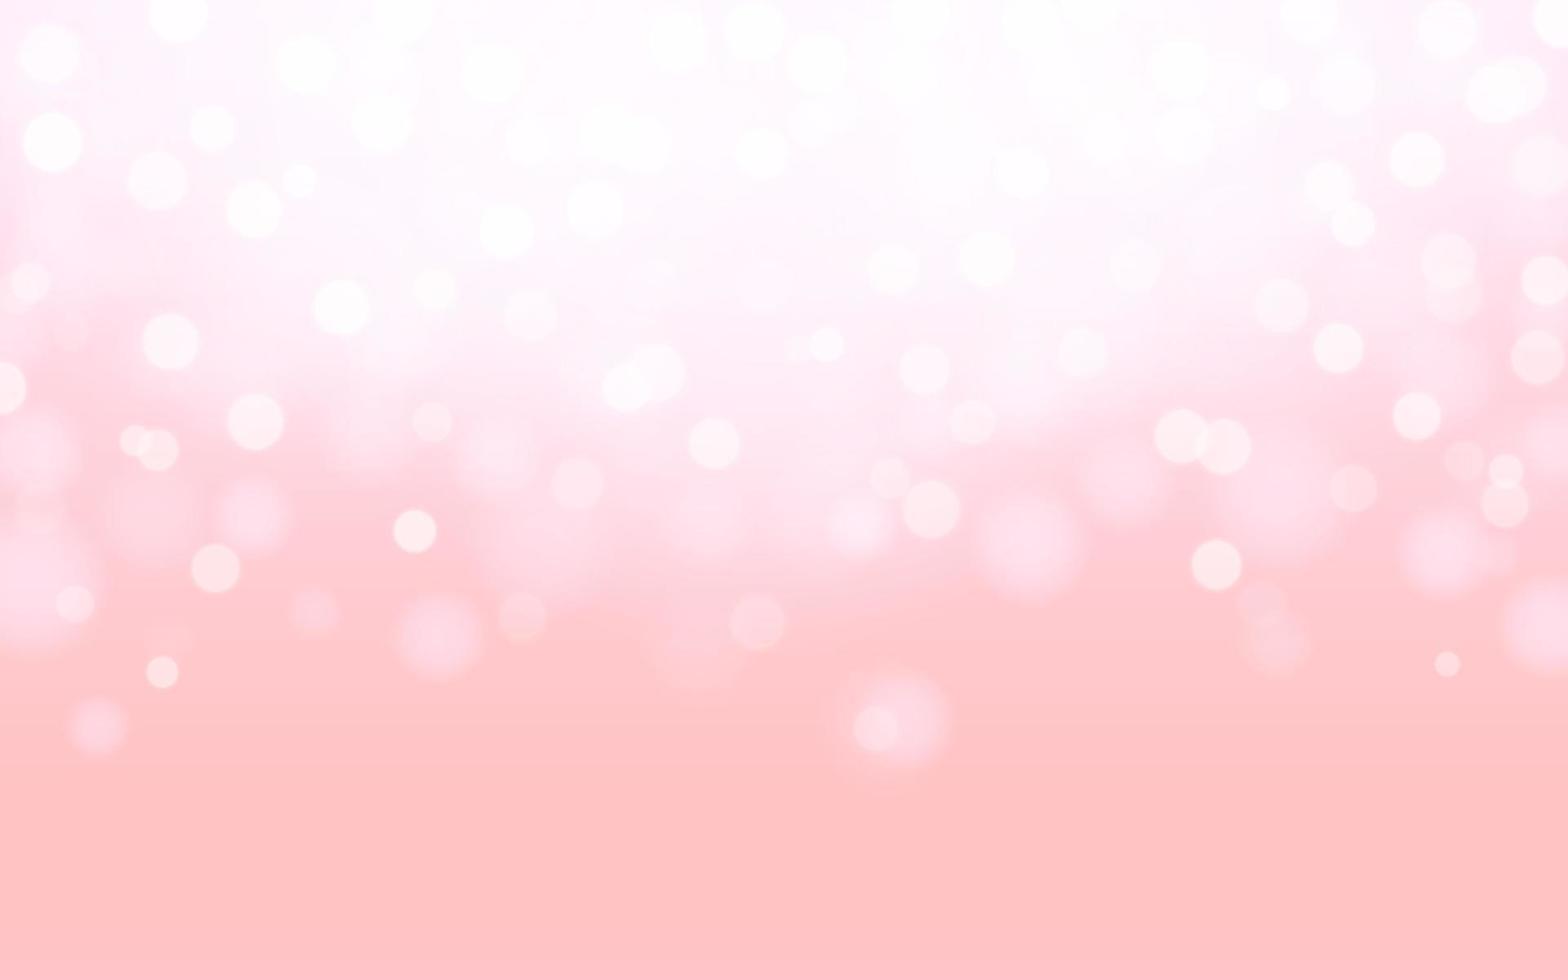 rosa colore bokeh morbido leggero astratto sfondo, vettore eps 10 illustrazione bokeh particelle, sfondo decorazione